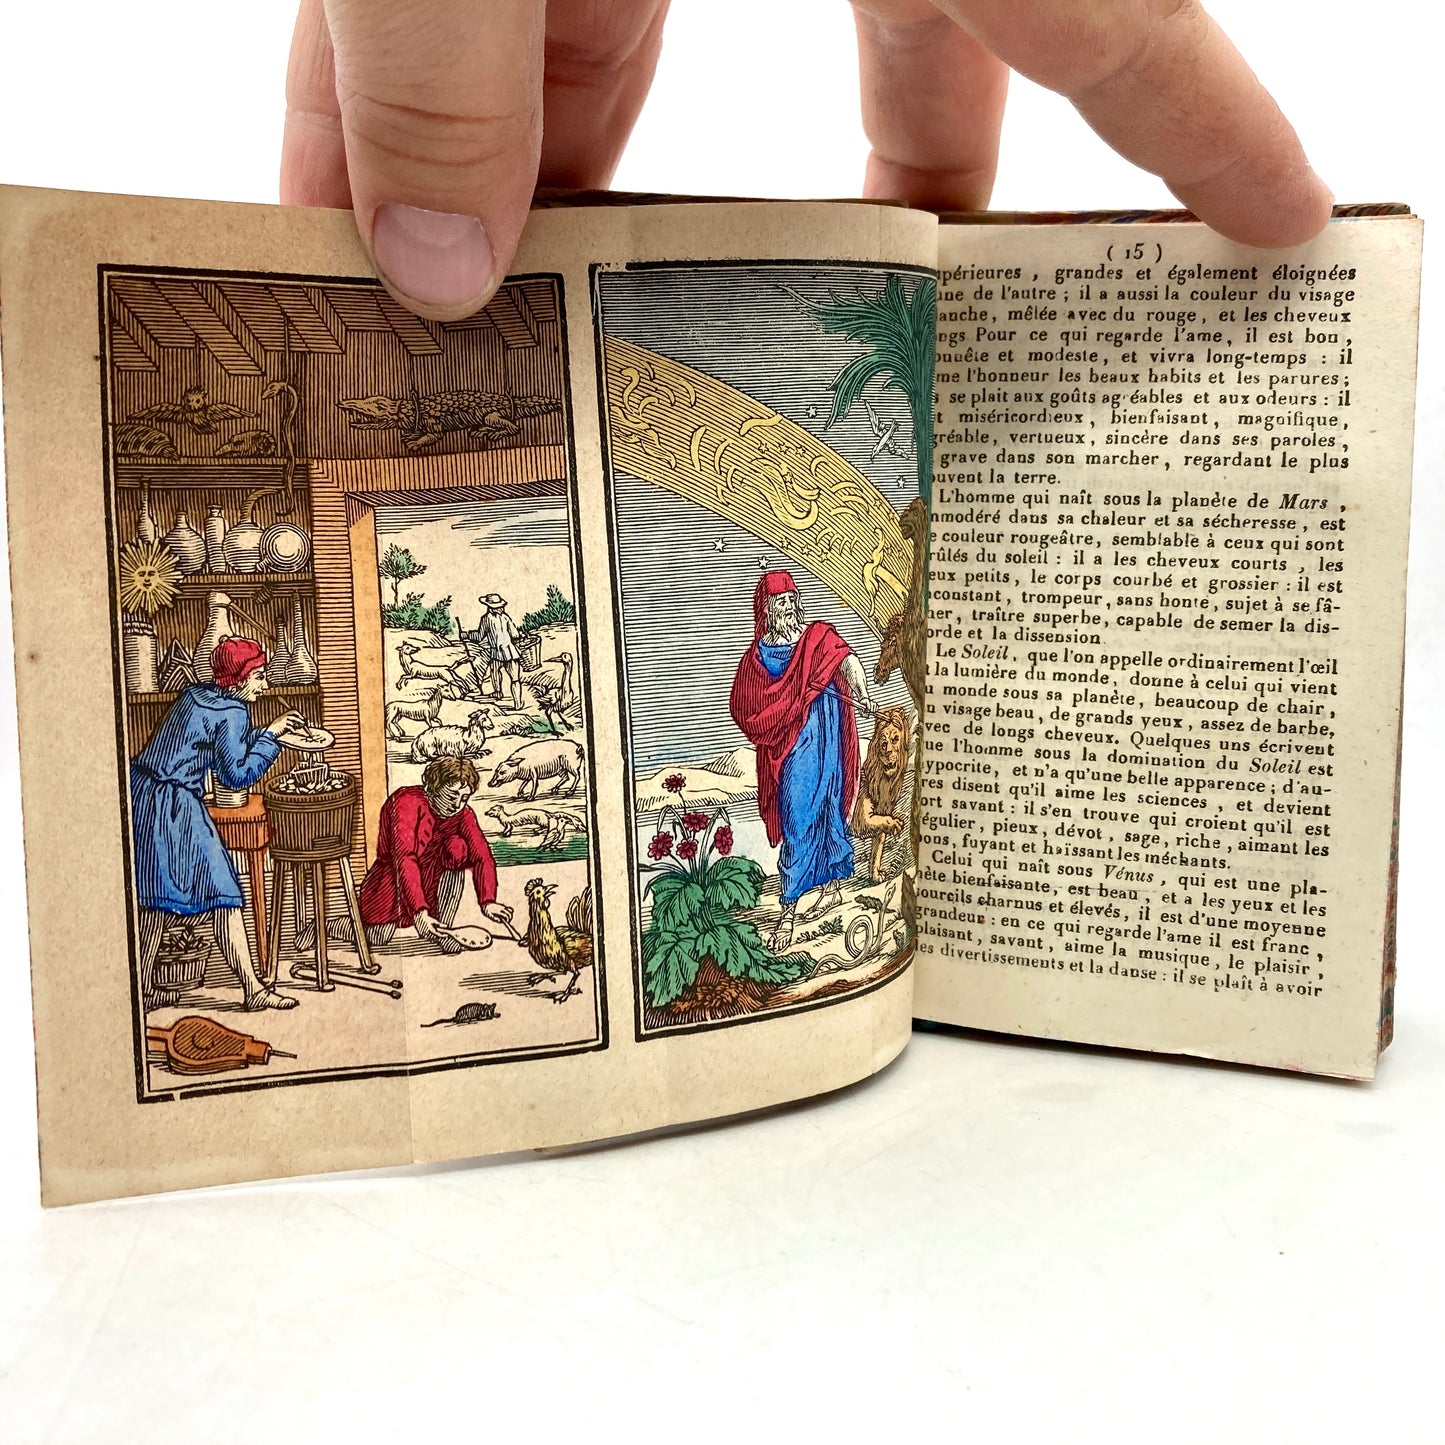 MAGNUS, Albertus “Les Admirables Secrets d’Albert le Grand” [Chez Les Hérities de Beringos, 1791]